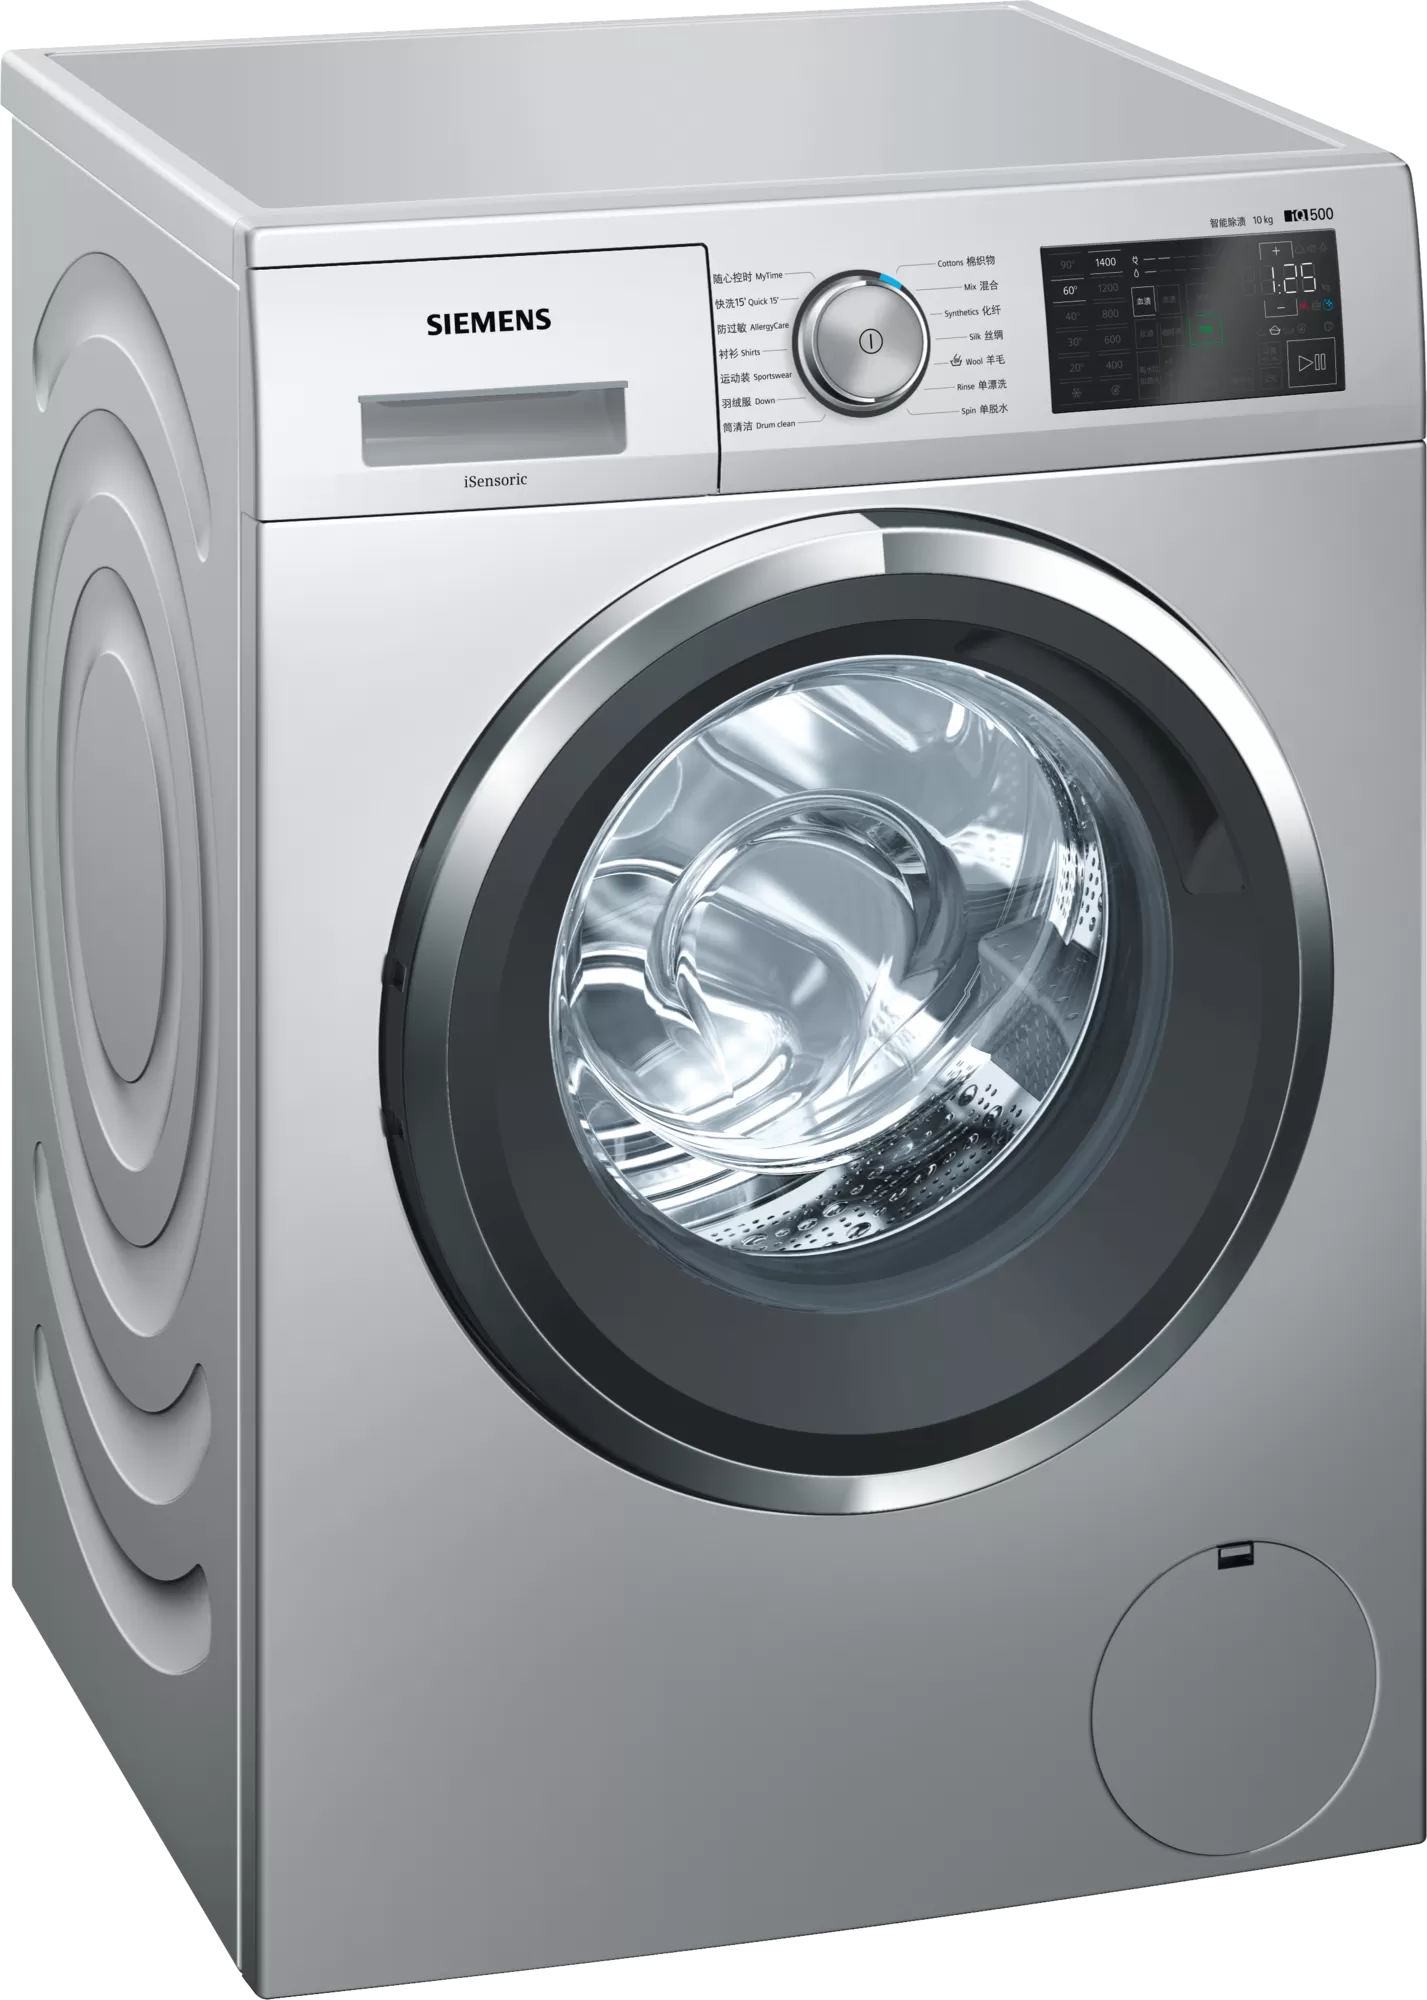 五,西门子「智朗系列」洗衣机,推荐型号「iq500 wm14r568lw.